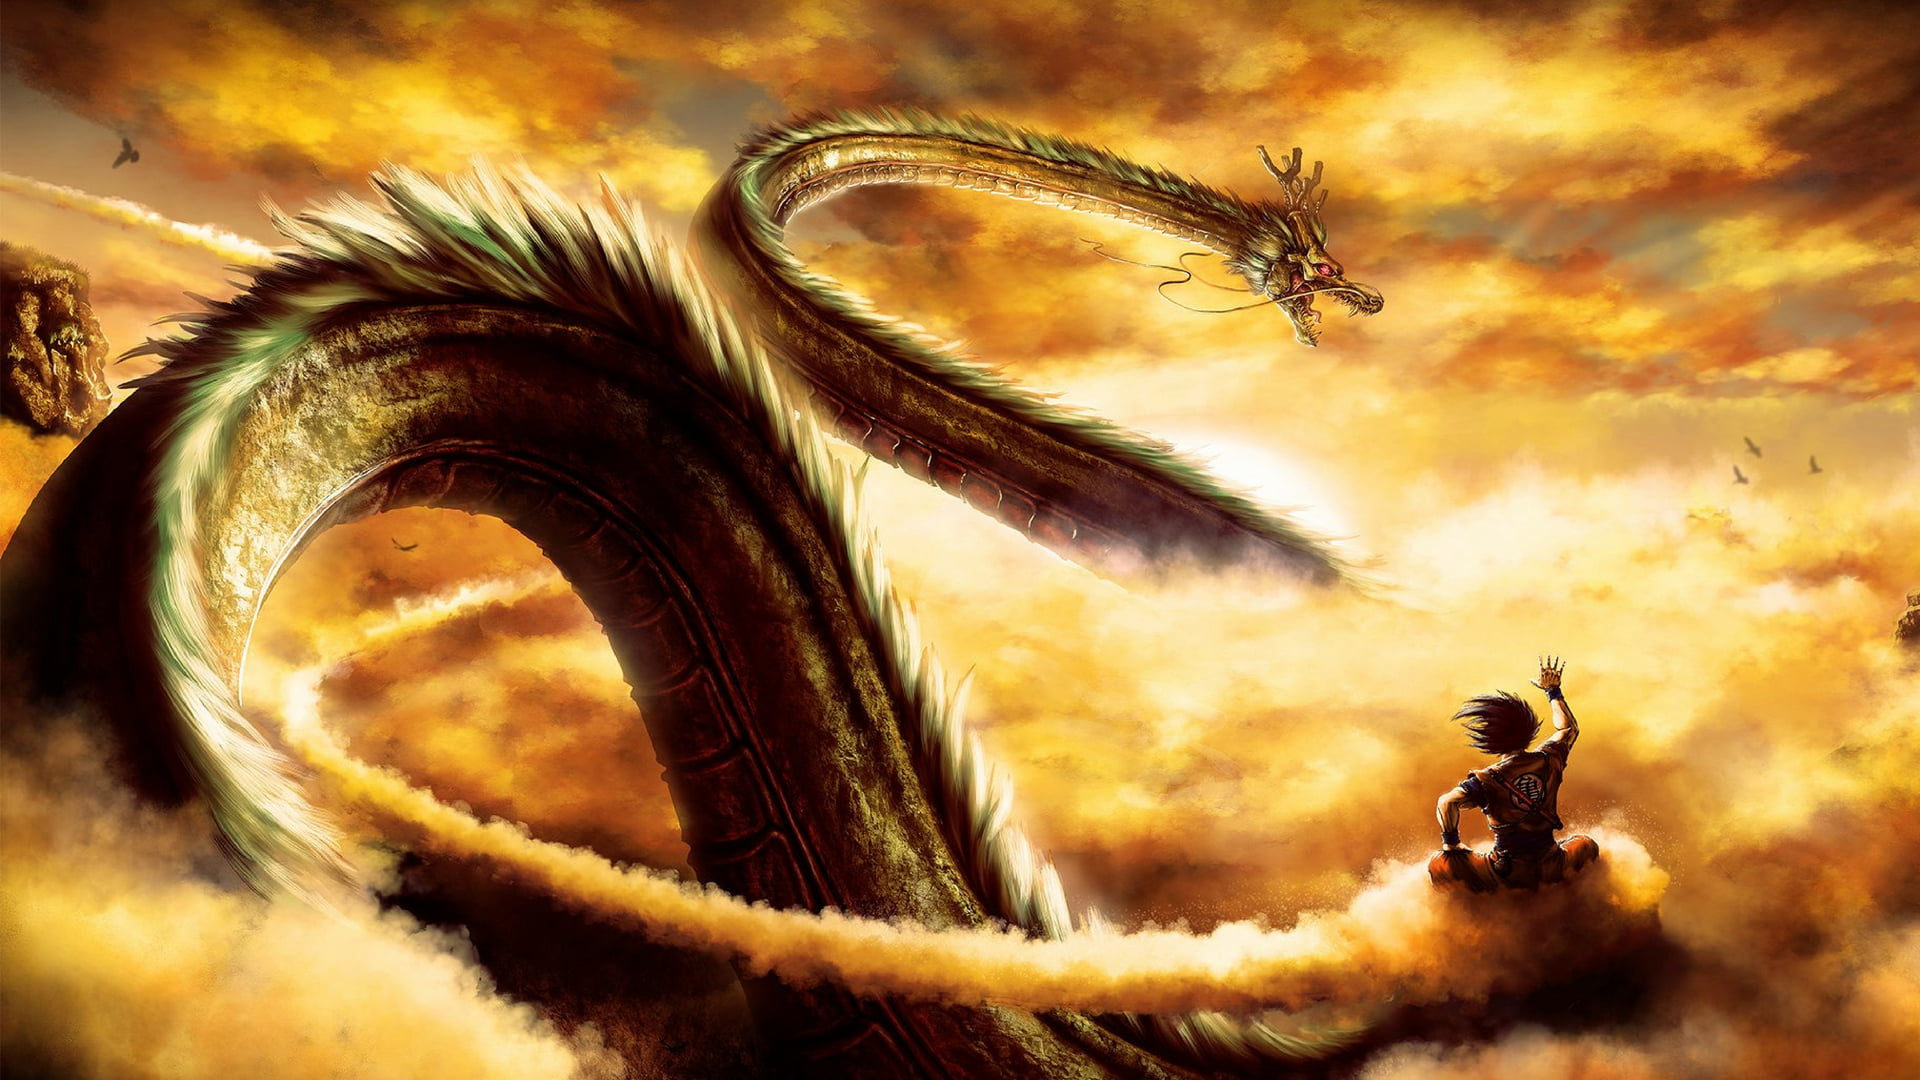 brown dragon illustration, Dragon Ball, anime boys, Shenron, sunset